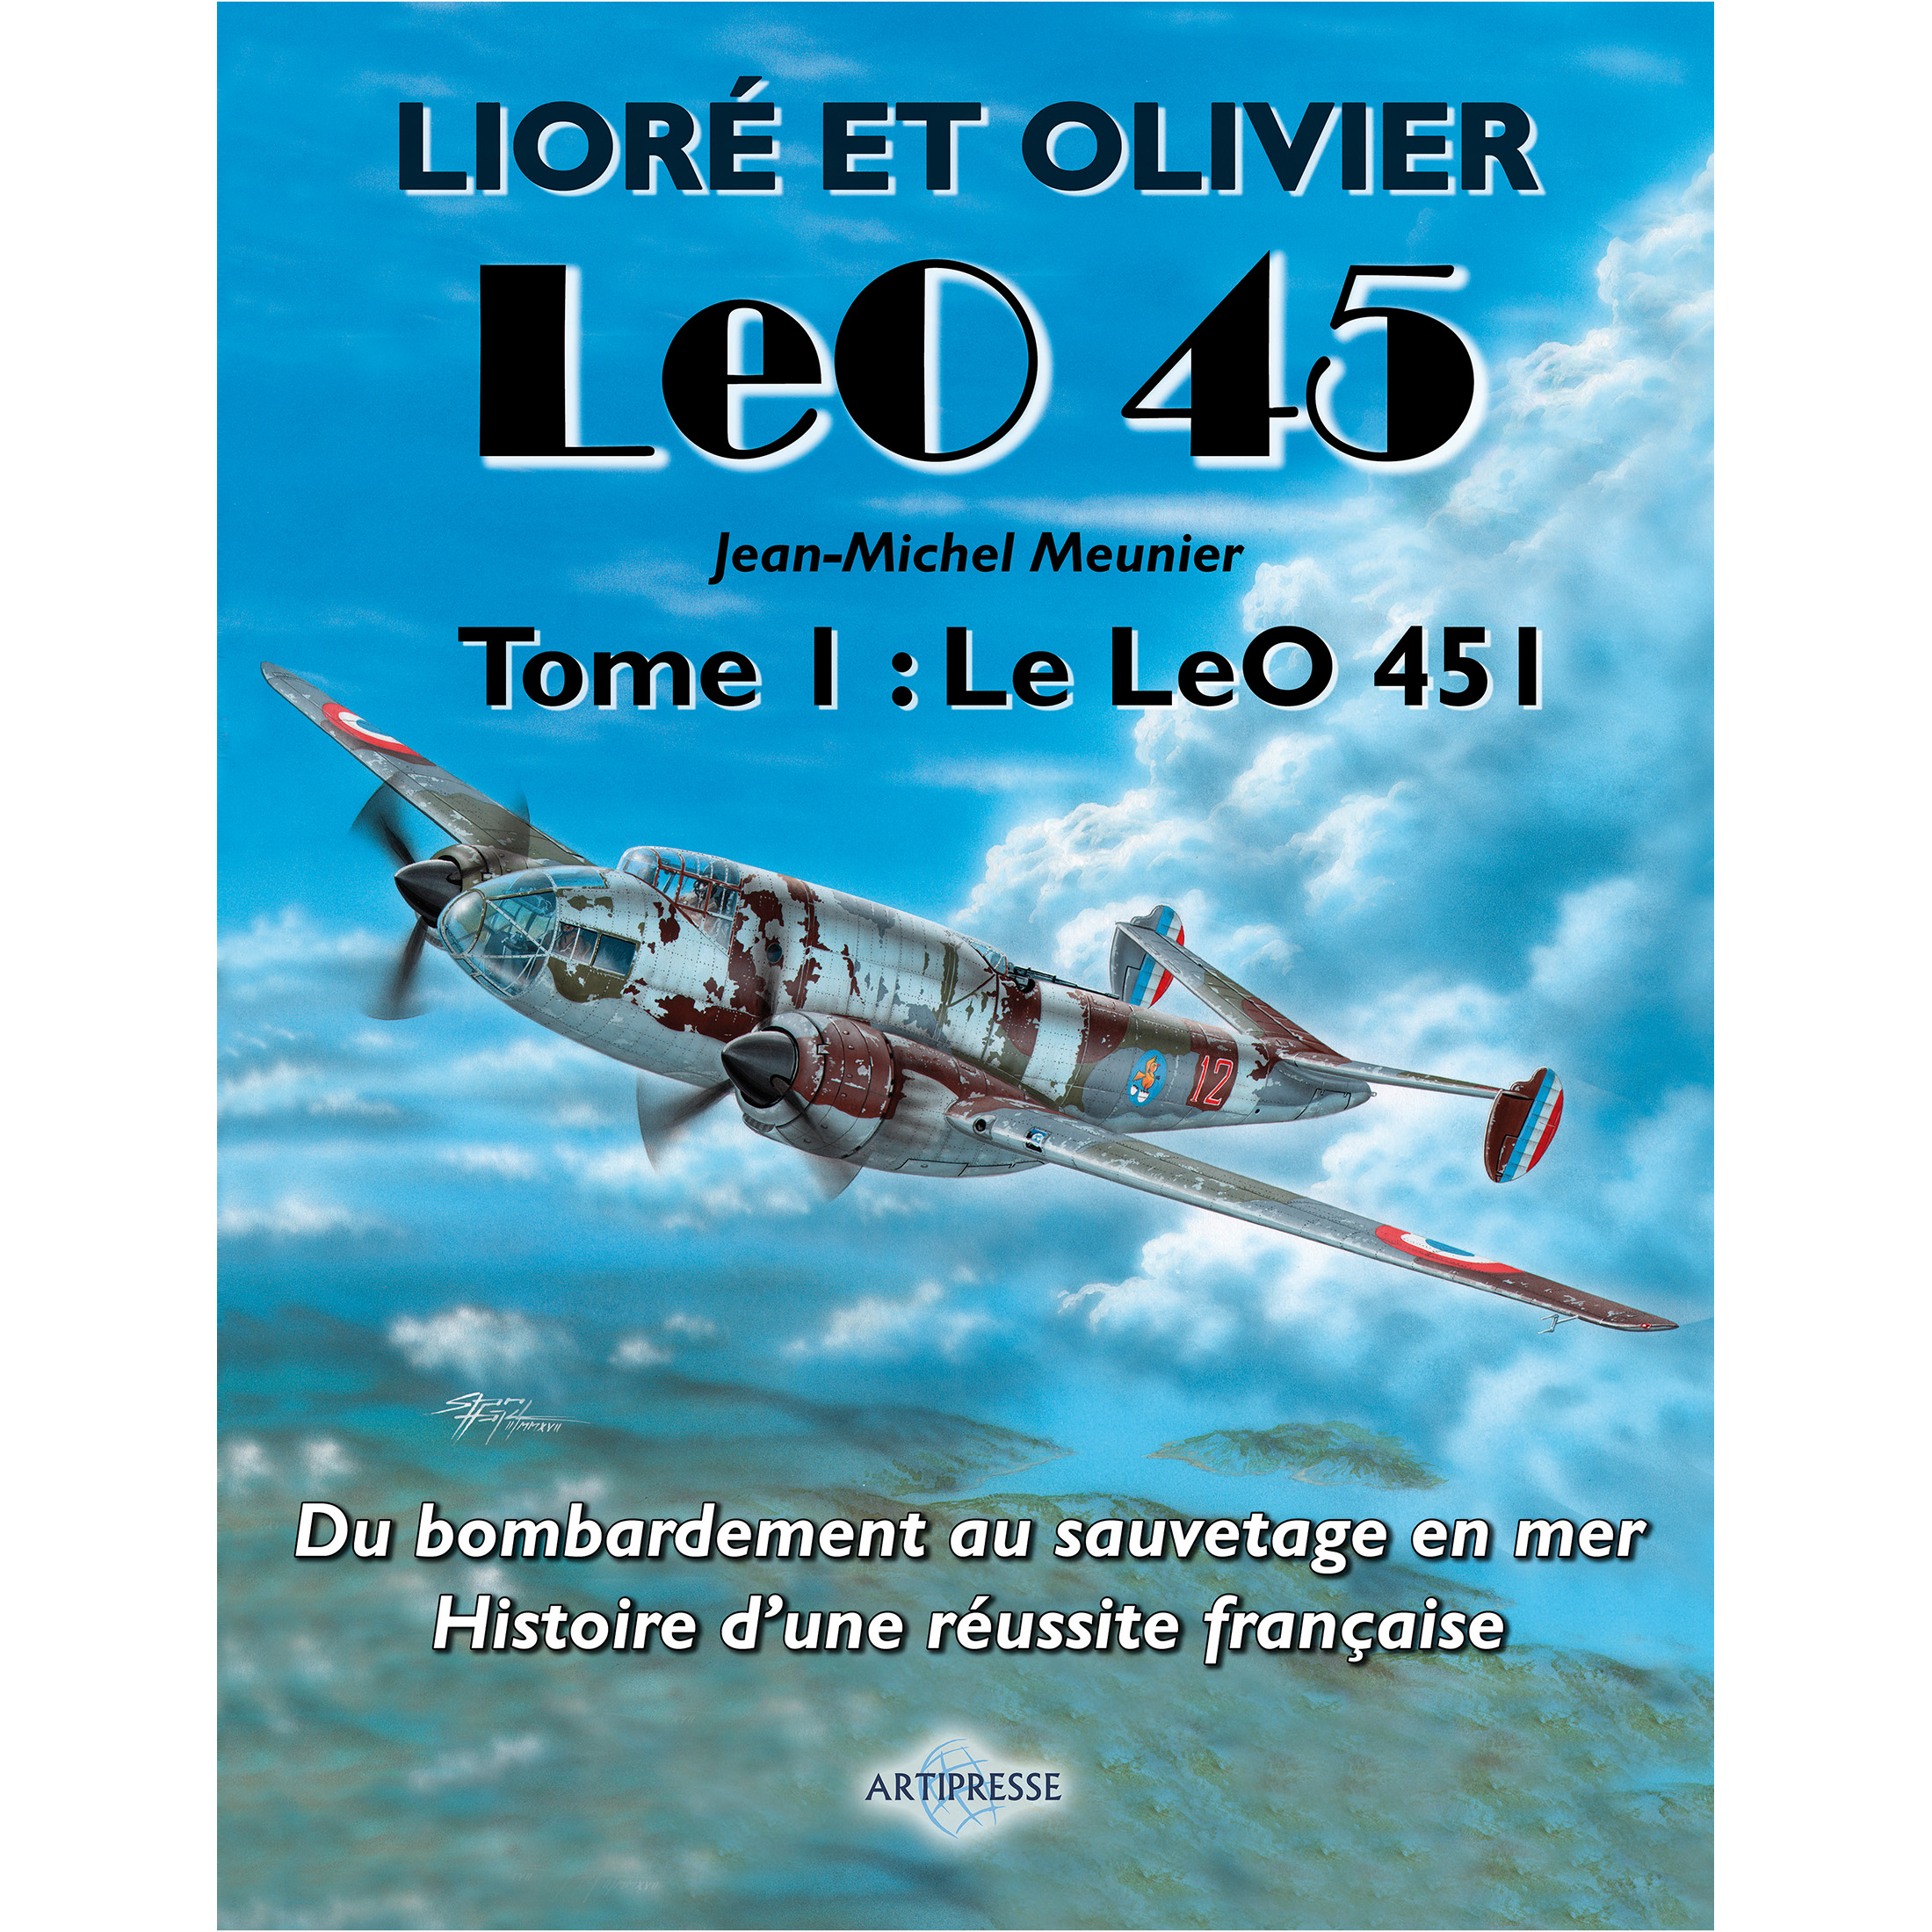 Les Lioré et Olivier Leo 45, Tome I : Le LeO 451 - French